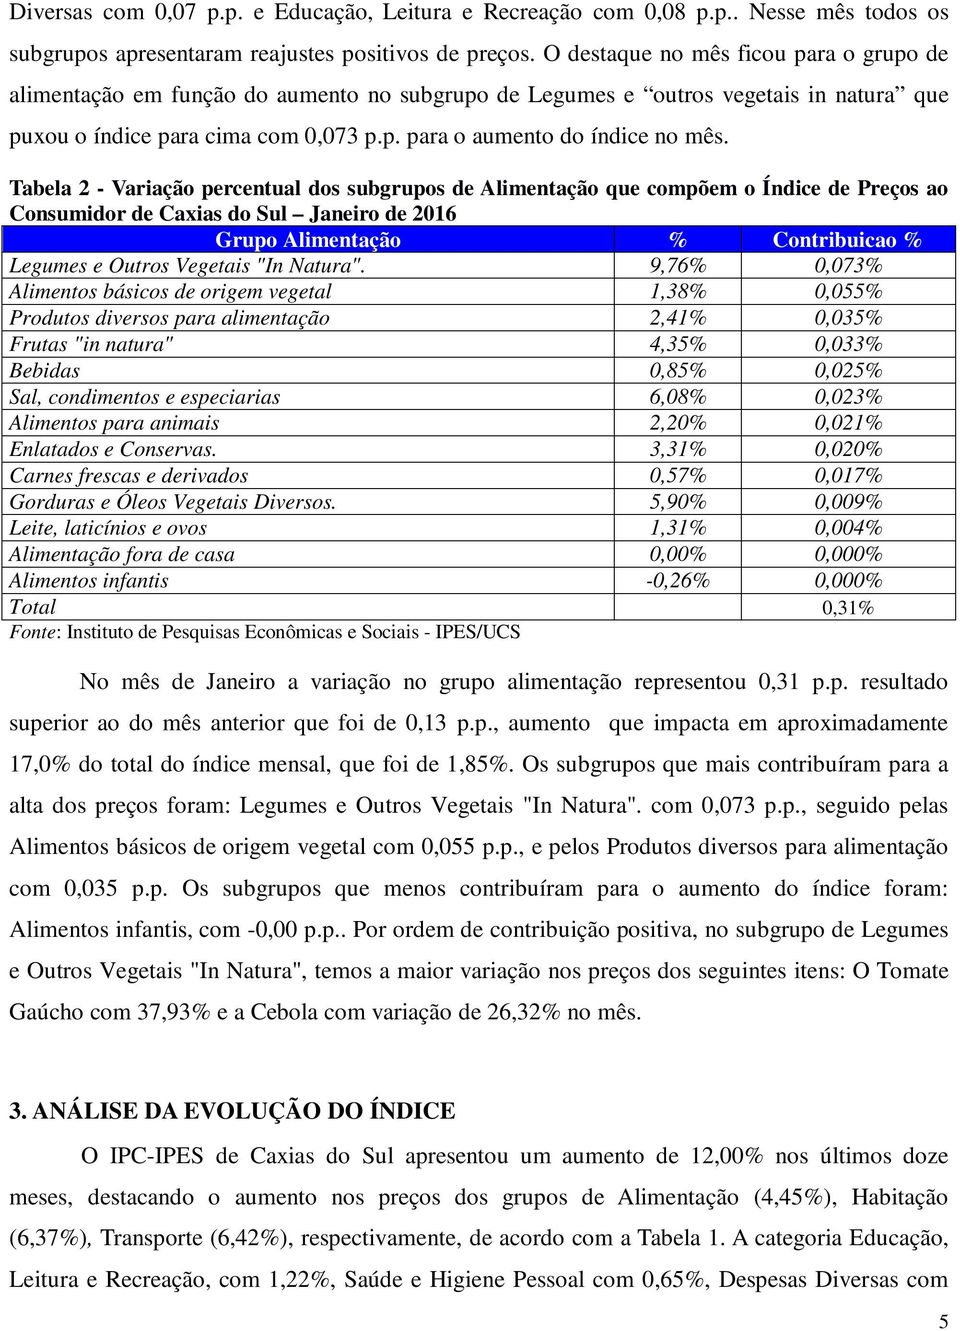 Tabela 2 - Variação percentual dos subgrupos de Alimentação que compõem o Índice de Preços ao Consumidor de Caxias do Sul Janeiro de 2016 Grupo Alimentação % Contribuicao % Legumes e Outros Vegetais